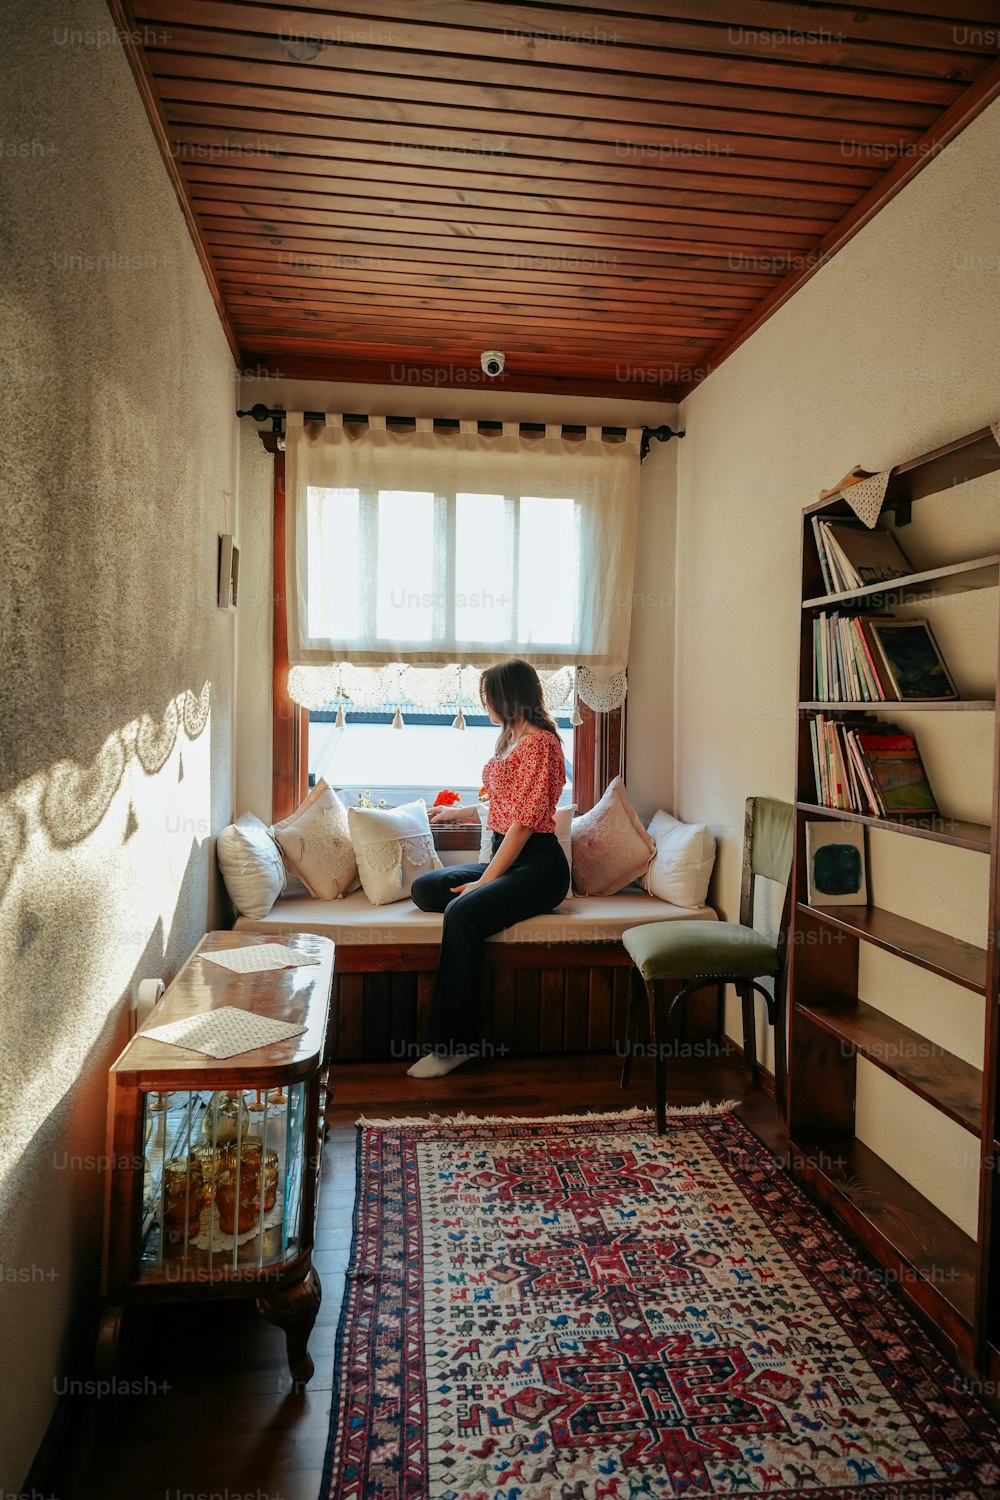 una donna seduta su un posto vicino al finestrino in un soggiorno